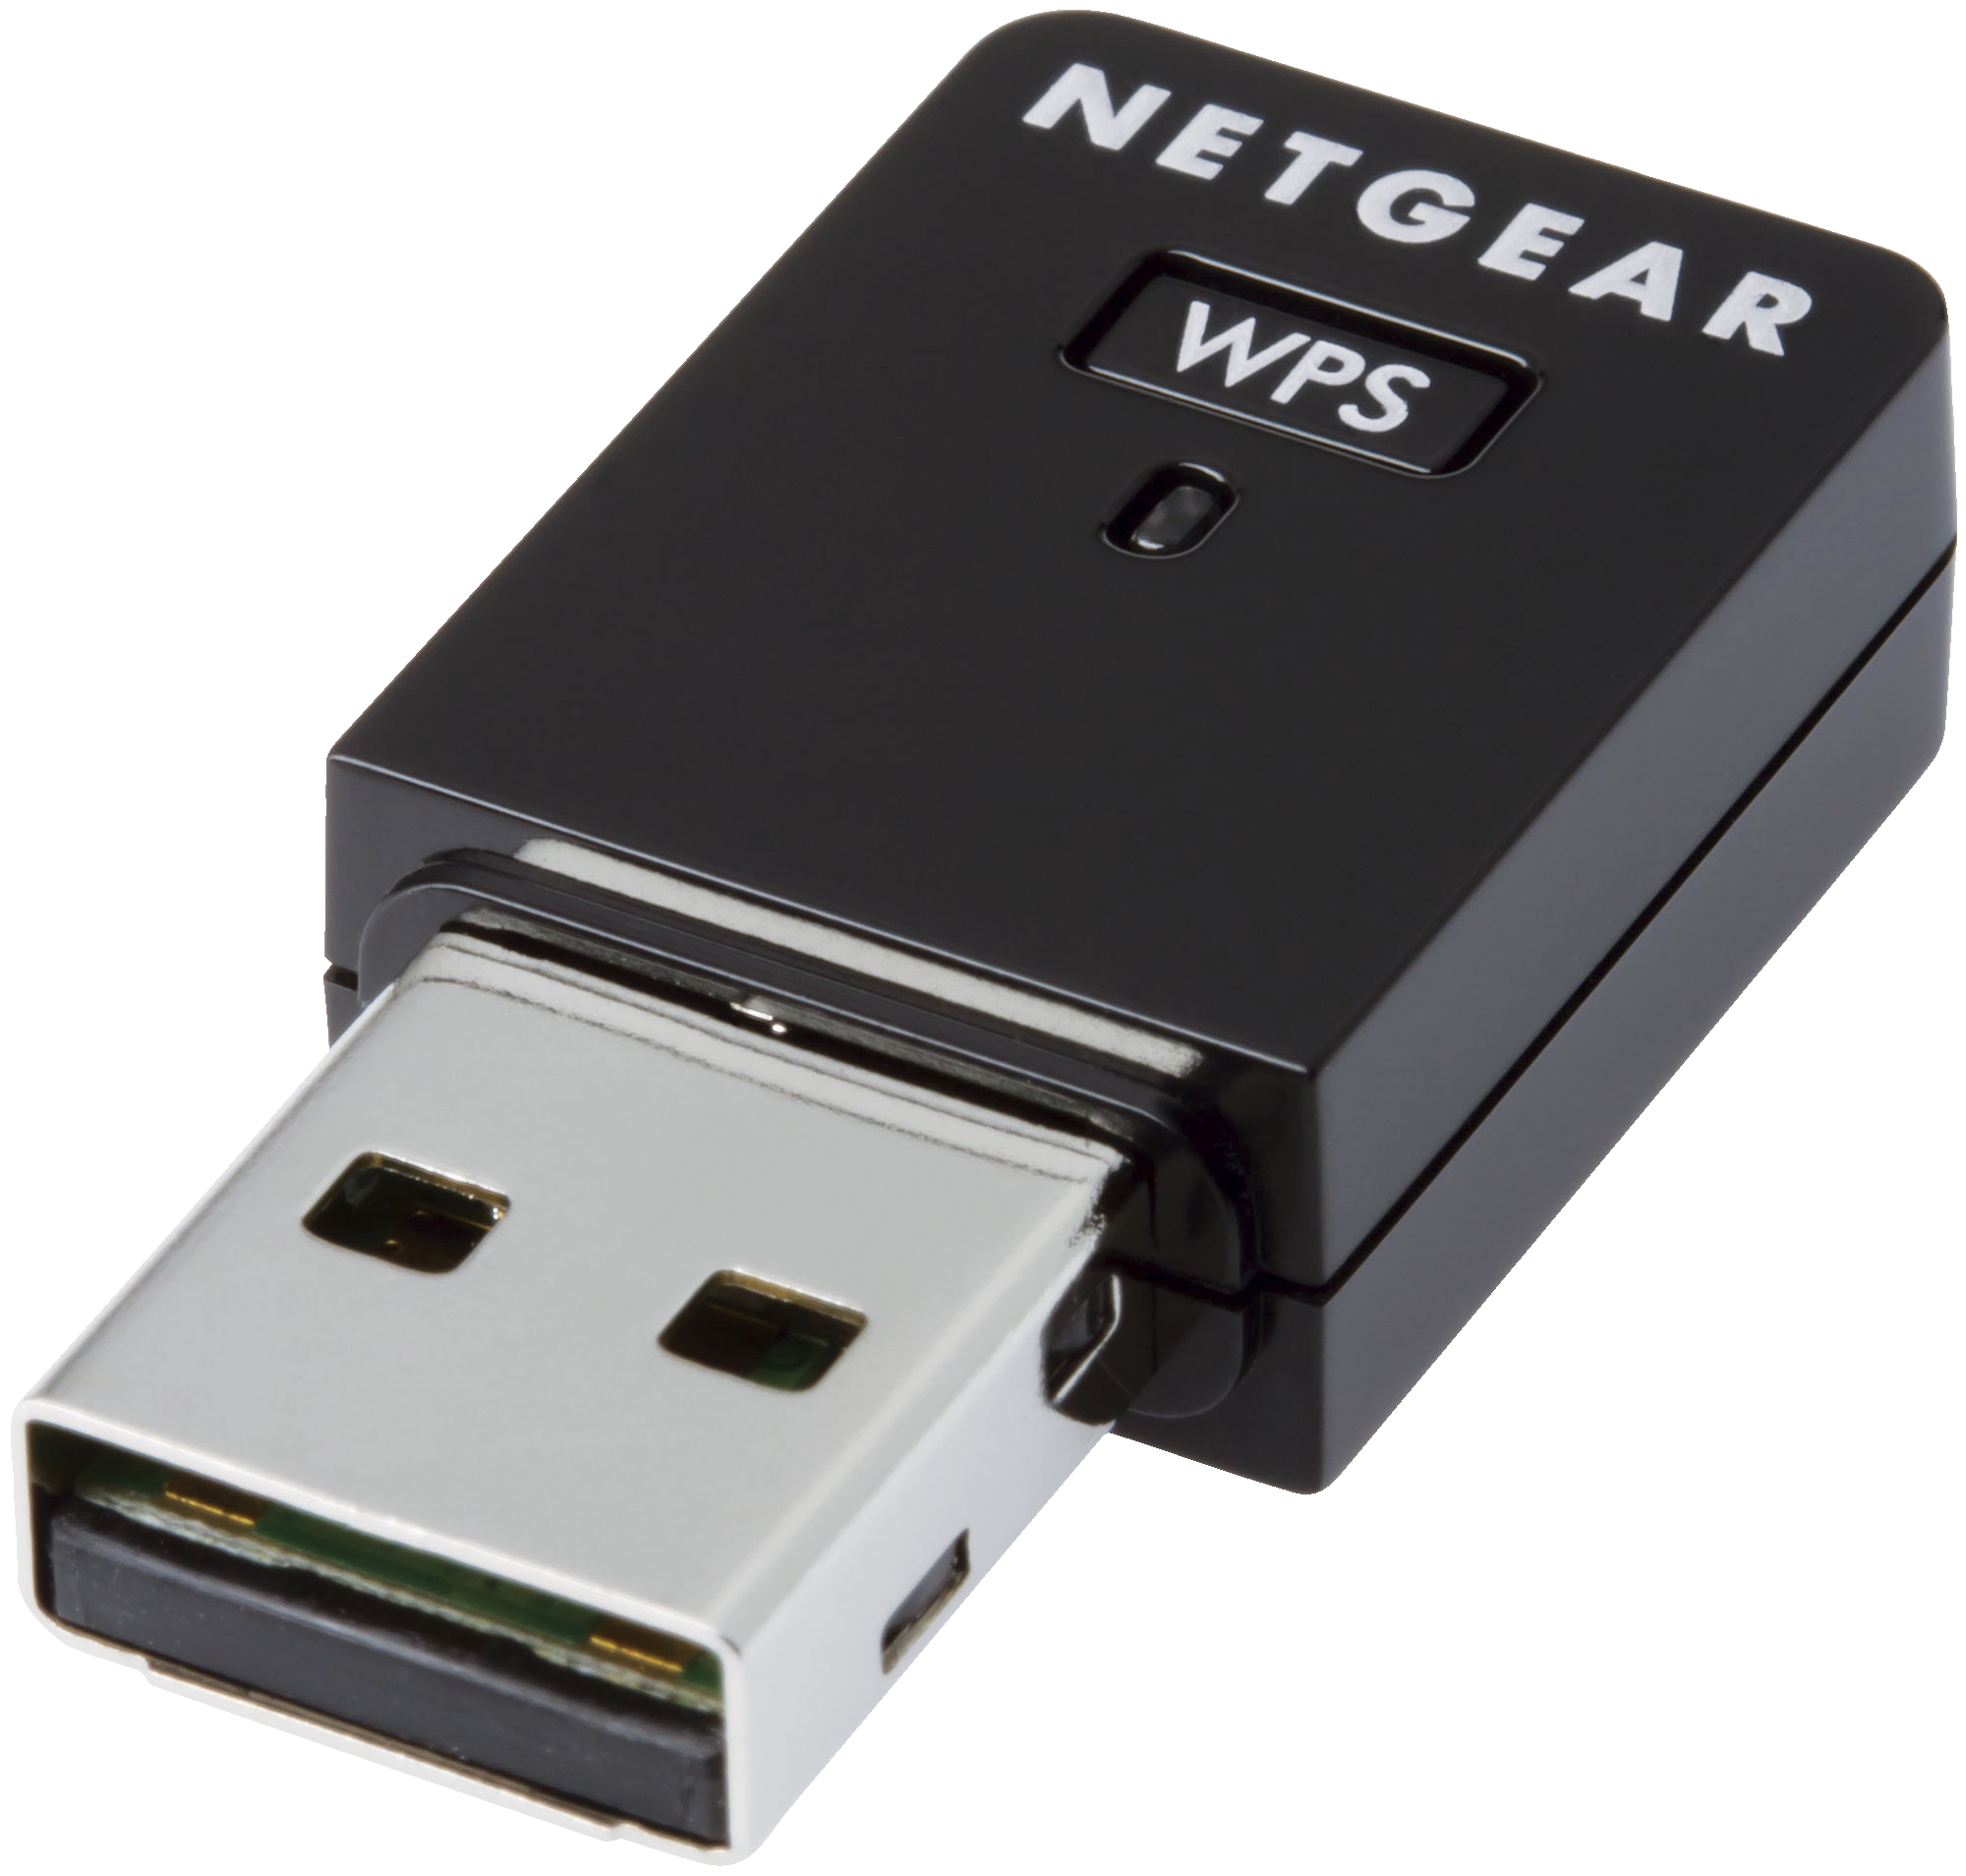 Netgear Trådlös USB Wi-Fi-adapter N300 - Nätverkskort och ...